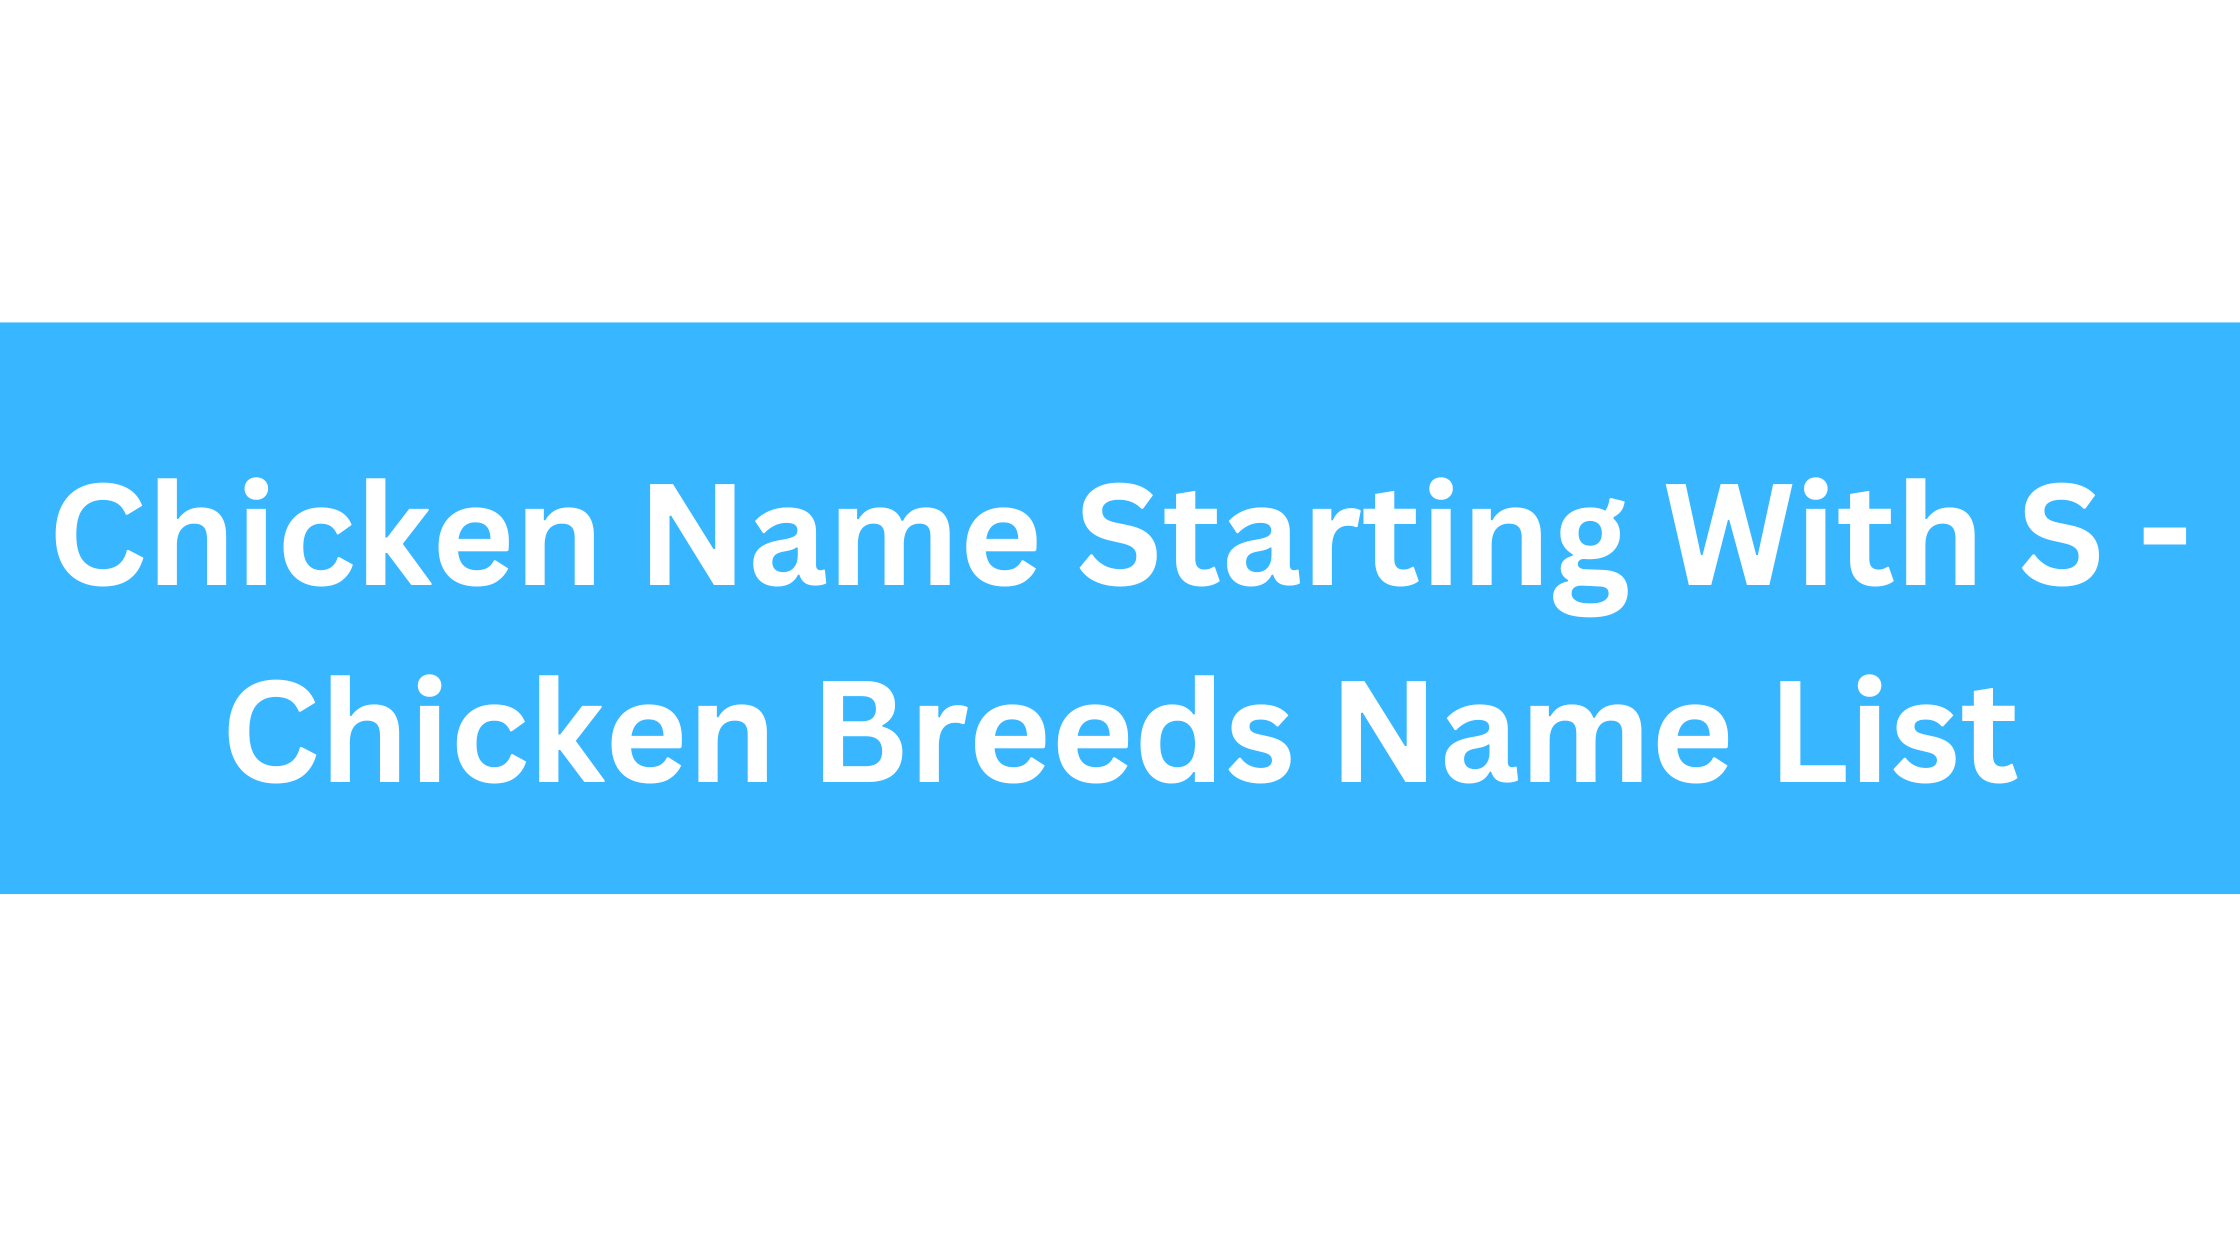 Chicken Breeds That Start With S